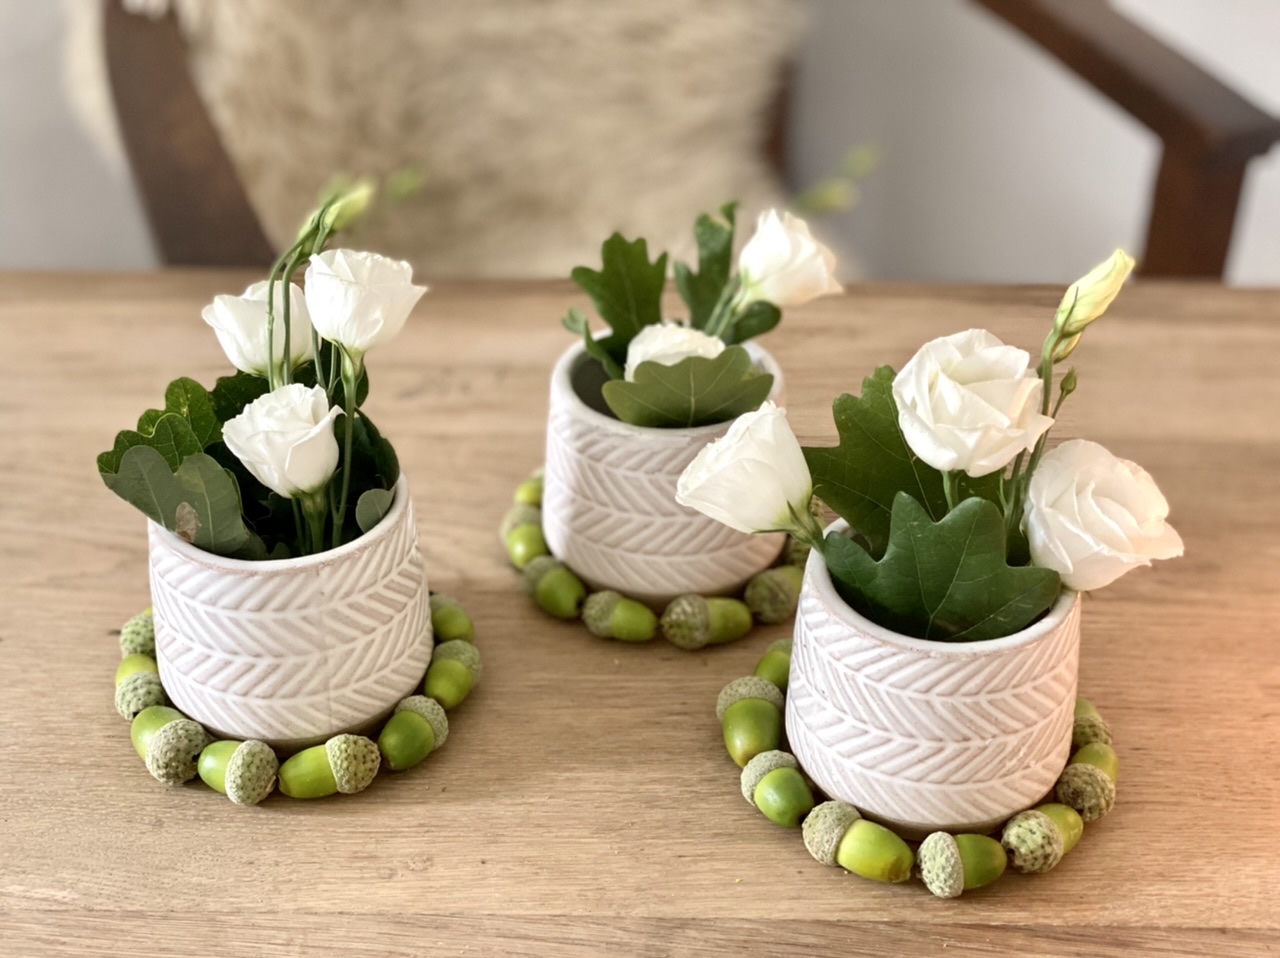 Basteln mit grünen Eicheln Idee 2: Drei Kränze aus "hintereinander liegenden" grünen Eicheln um drei Väschen mit Lysianthus-Blüten